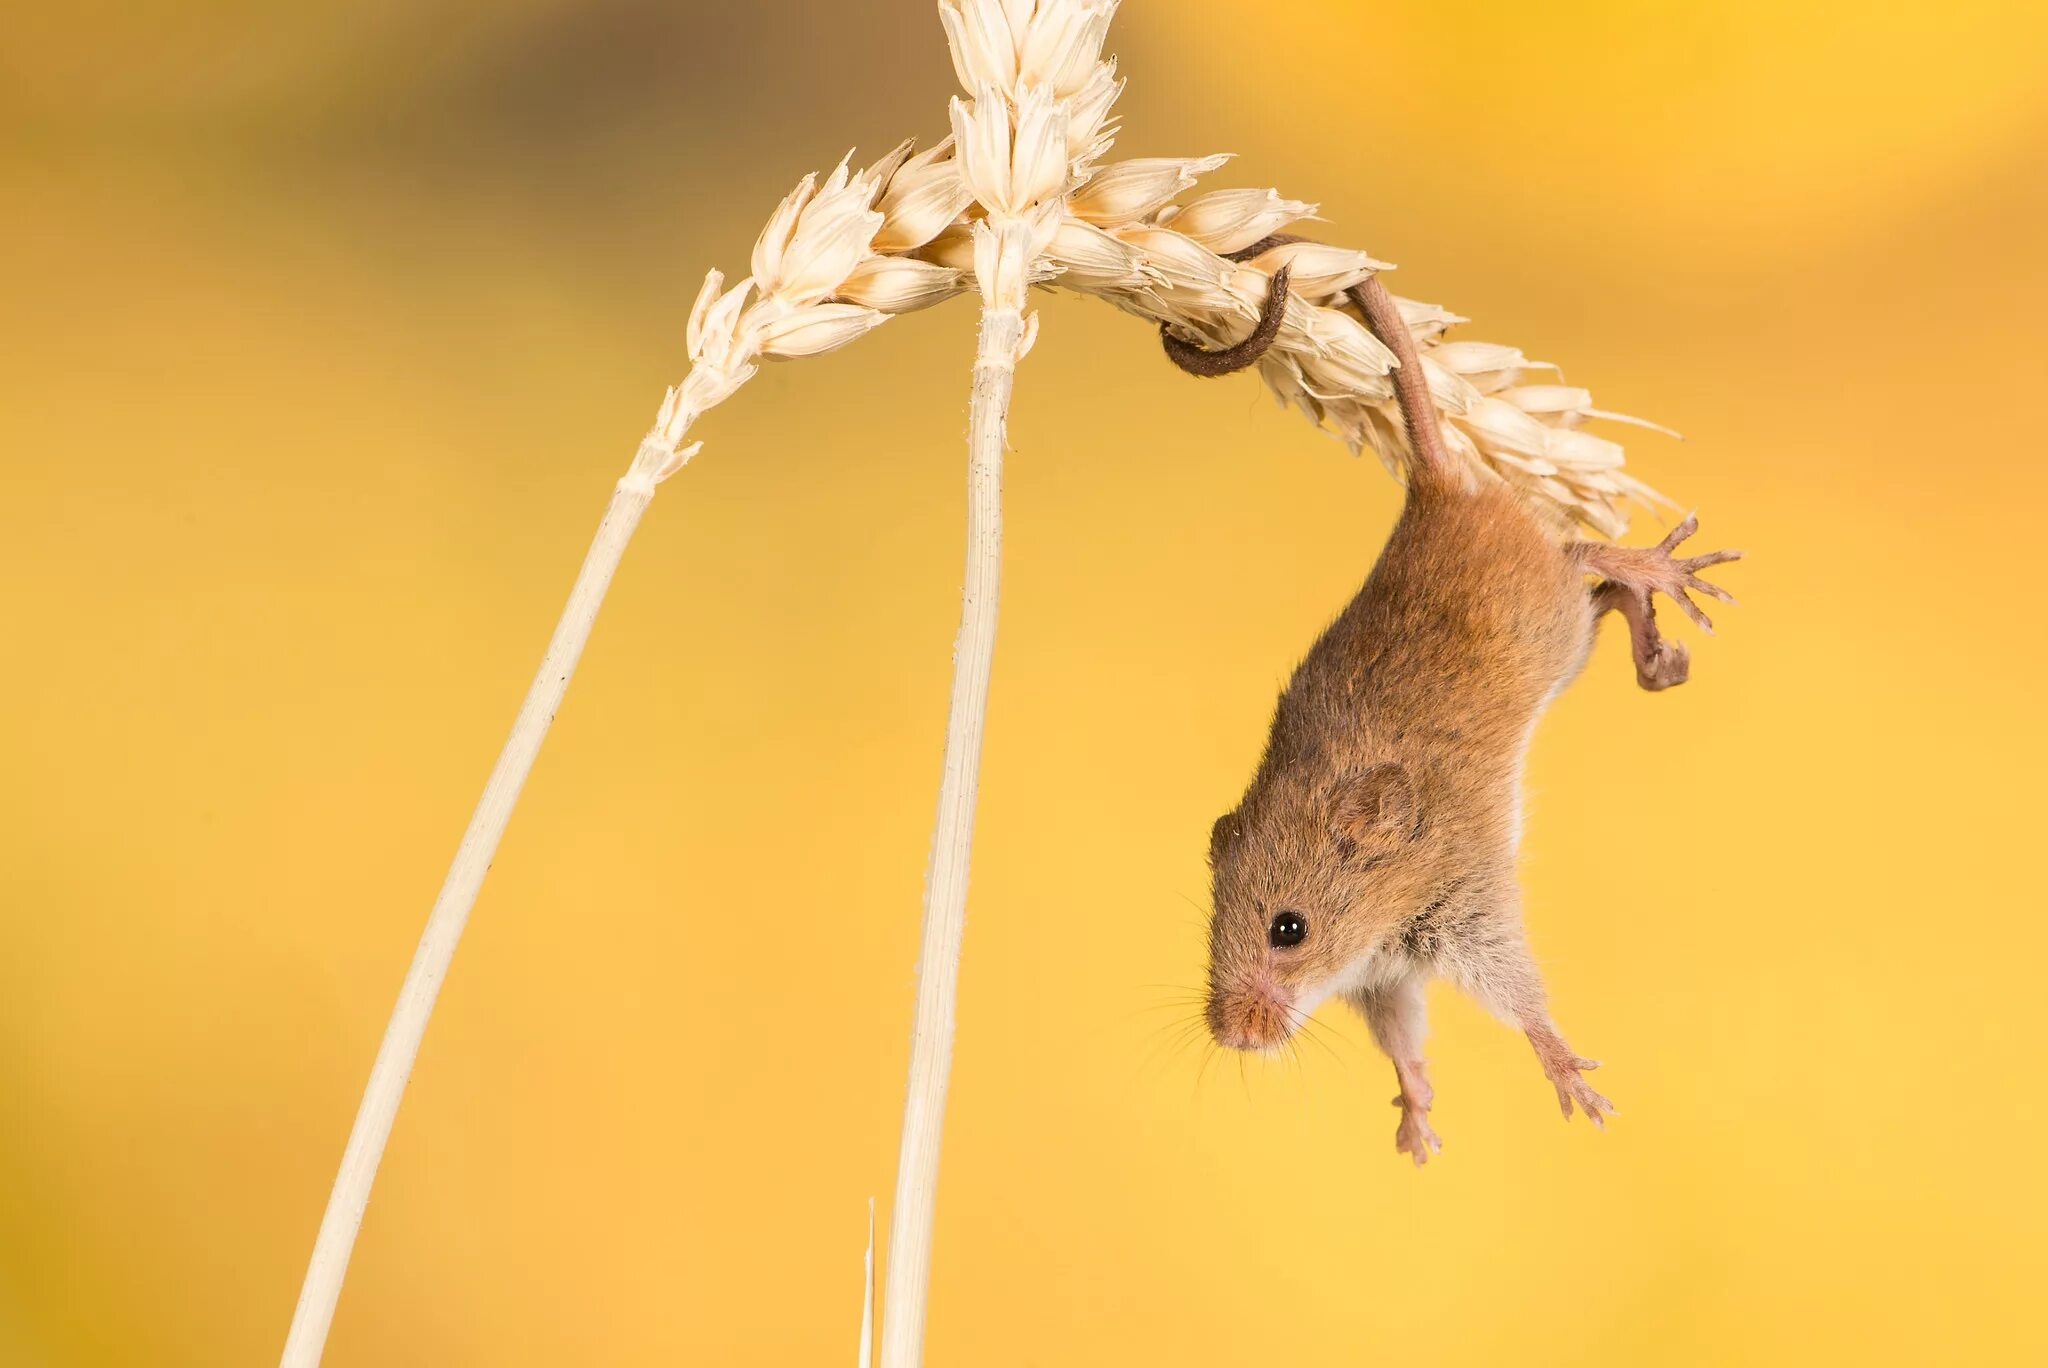 Полевая мышь убегает. Мышь Малютка. Мышь-Малютка – Micromys minutus. Полевая мышь Малютка. Астраханский заповедник мыши малютки.